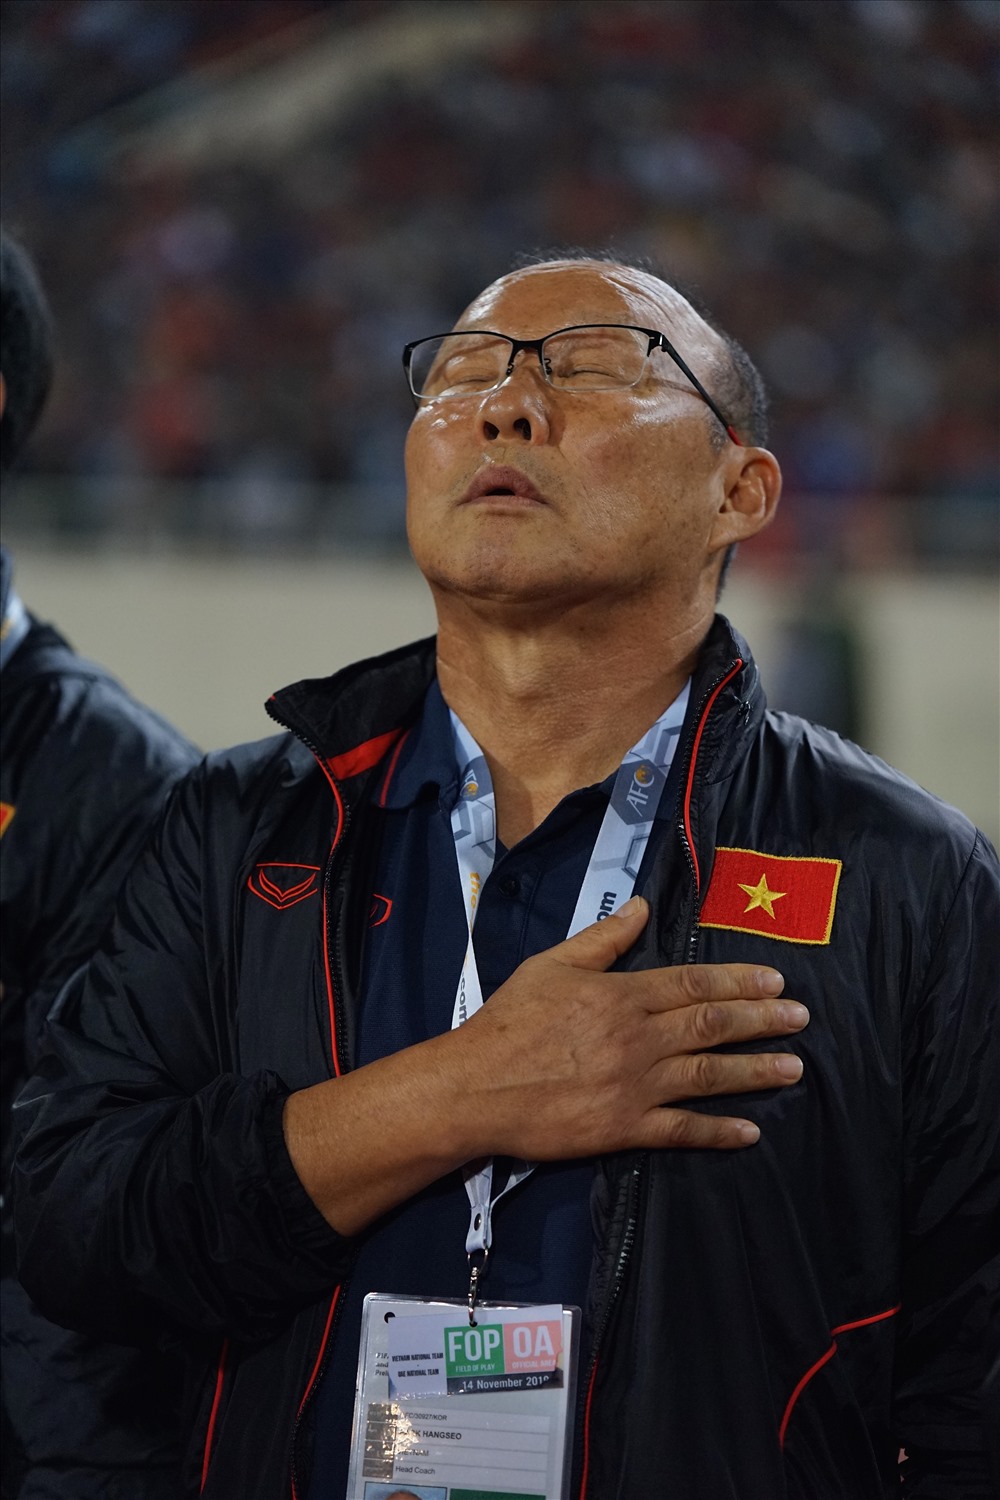 Huấn luyện viên Park Hang-seo thường có thói quen đặt tay lên ngực trái, nơi có quốc kỳ Việt Nam và nhẩm theo quốc ca trong nghi lễ chào cờ trước trận đấu. Với ông Park, đây là hành động thể hiện sự trân trọng đất nước mình đang làm việc và cống hiến.